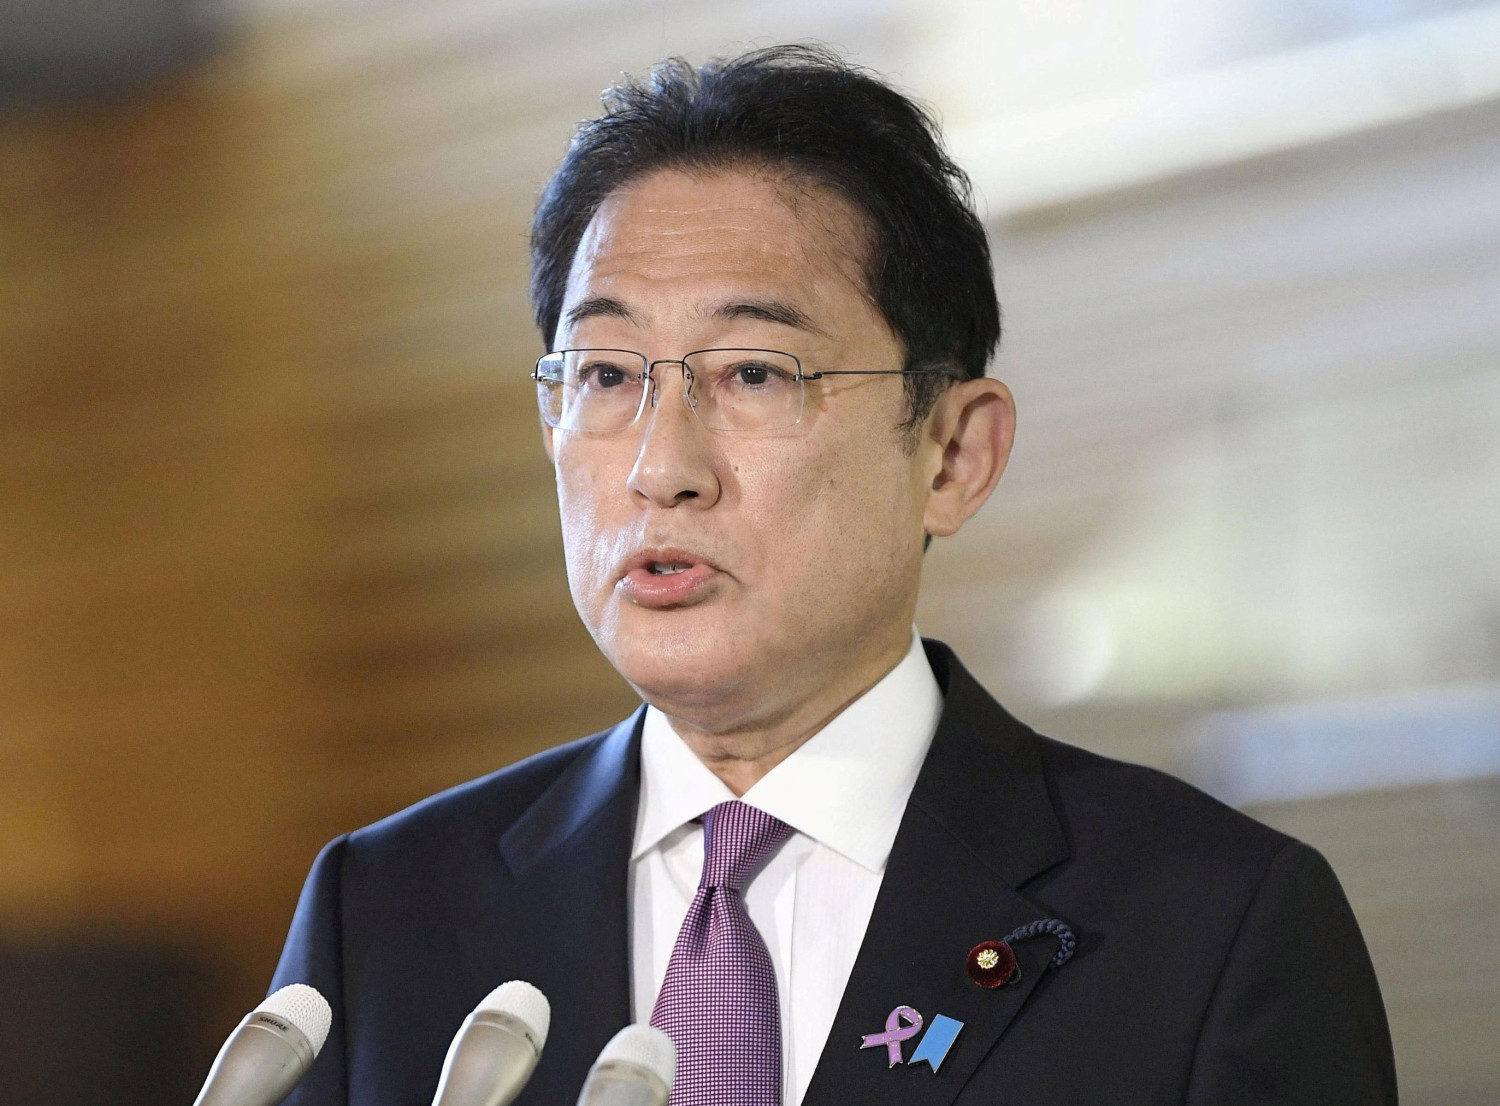 El primer ministro de Japón cesará a varios altos cargos por financiación irregular